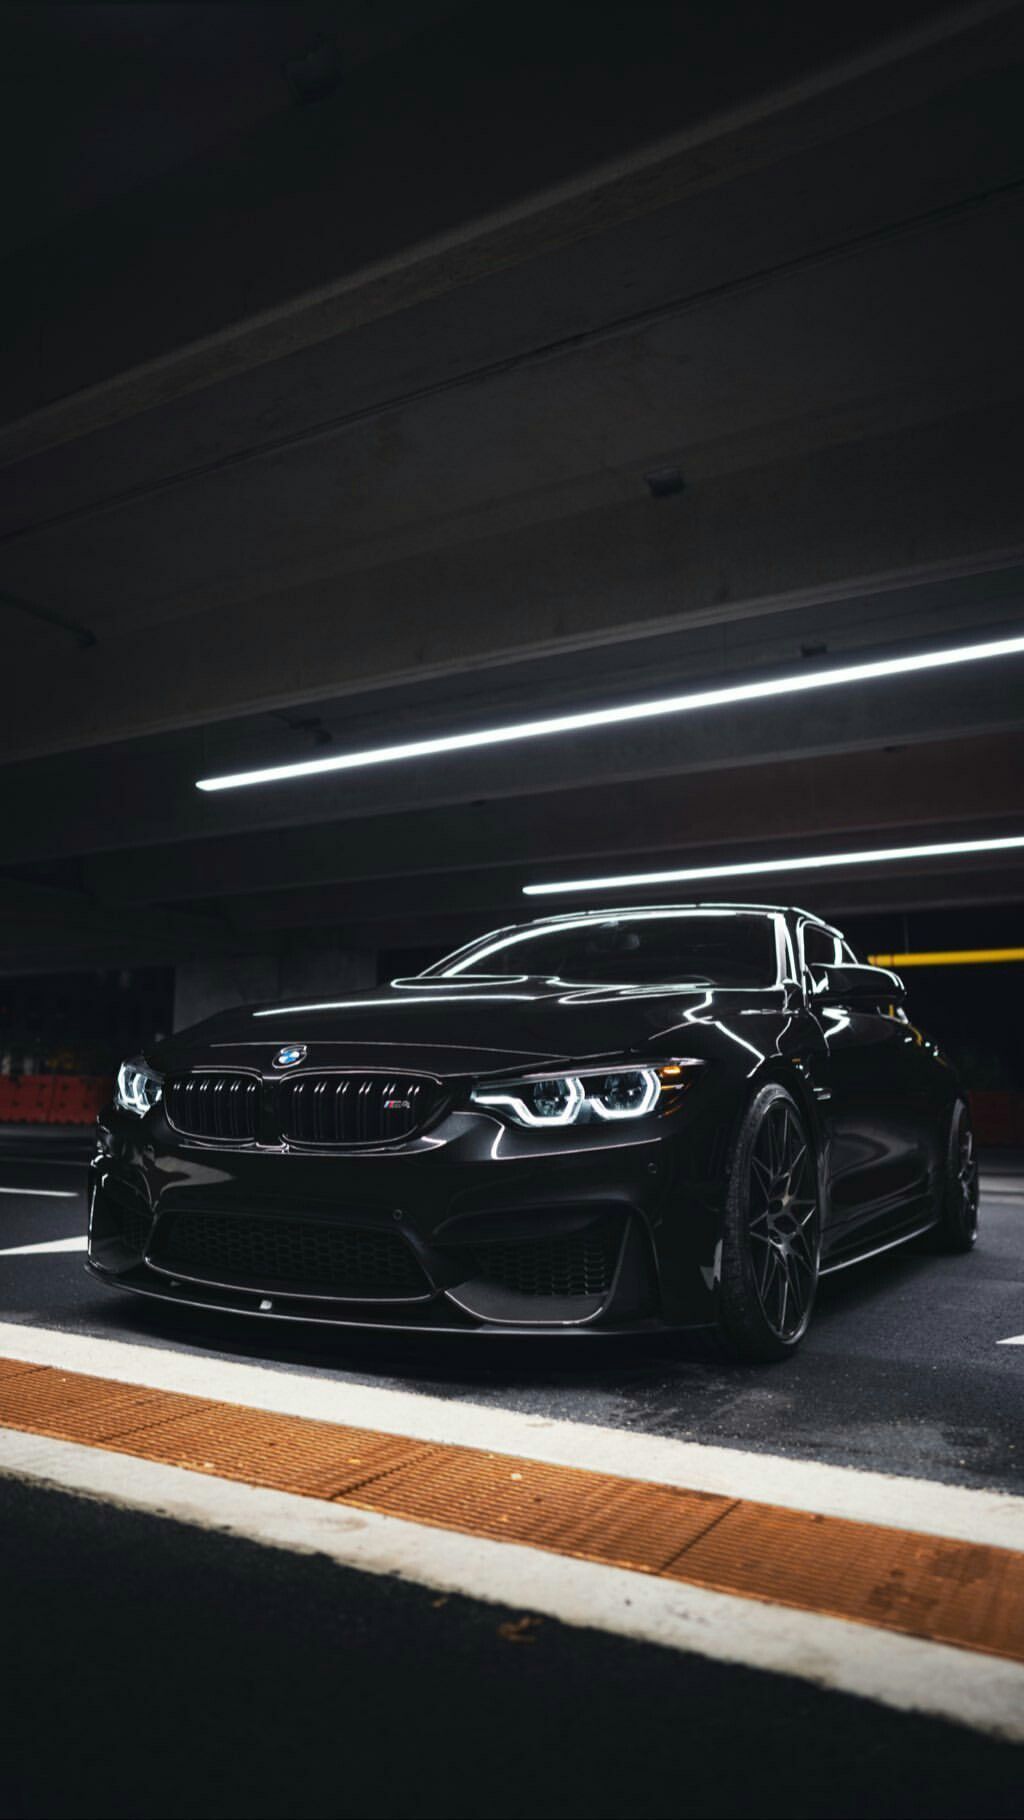 A black BMW M2 parked in a dark parking garage. - BMW